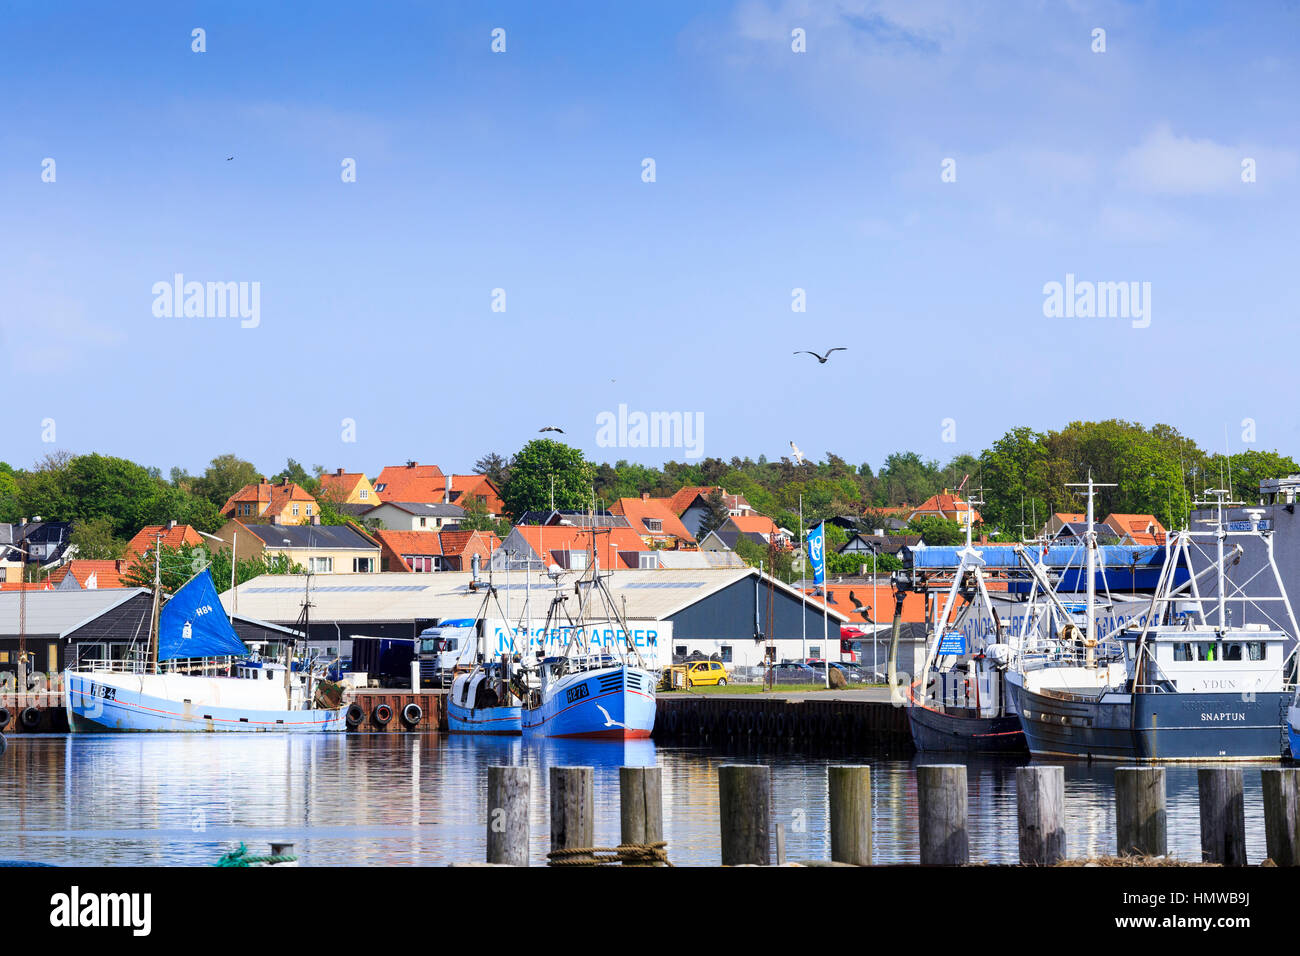 Les chalutiers de pêche colorés dans le port d'Hundested, Danemark Banque D'Images